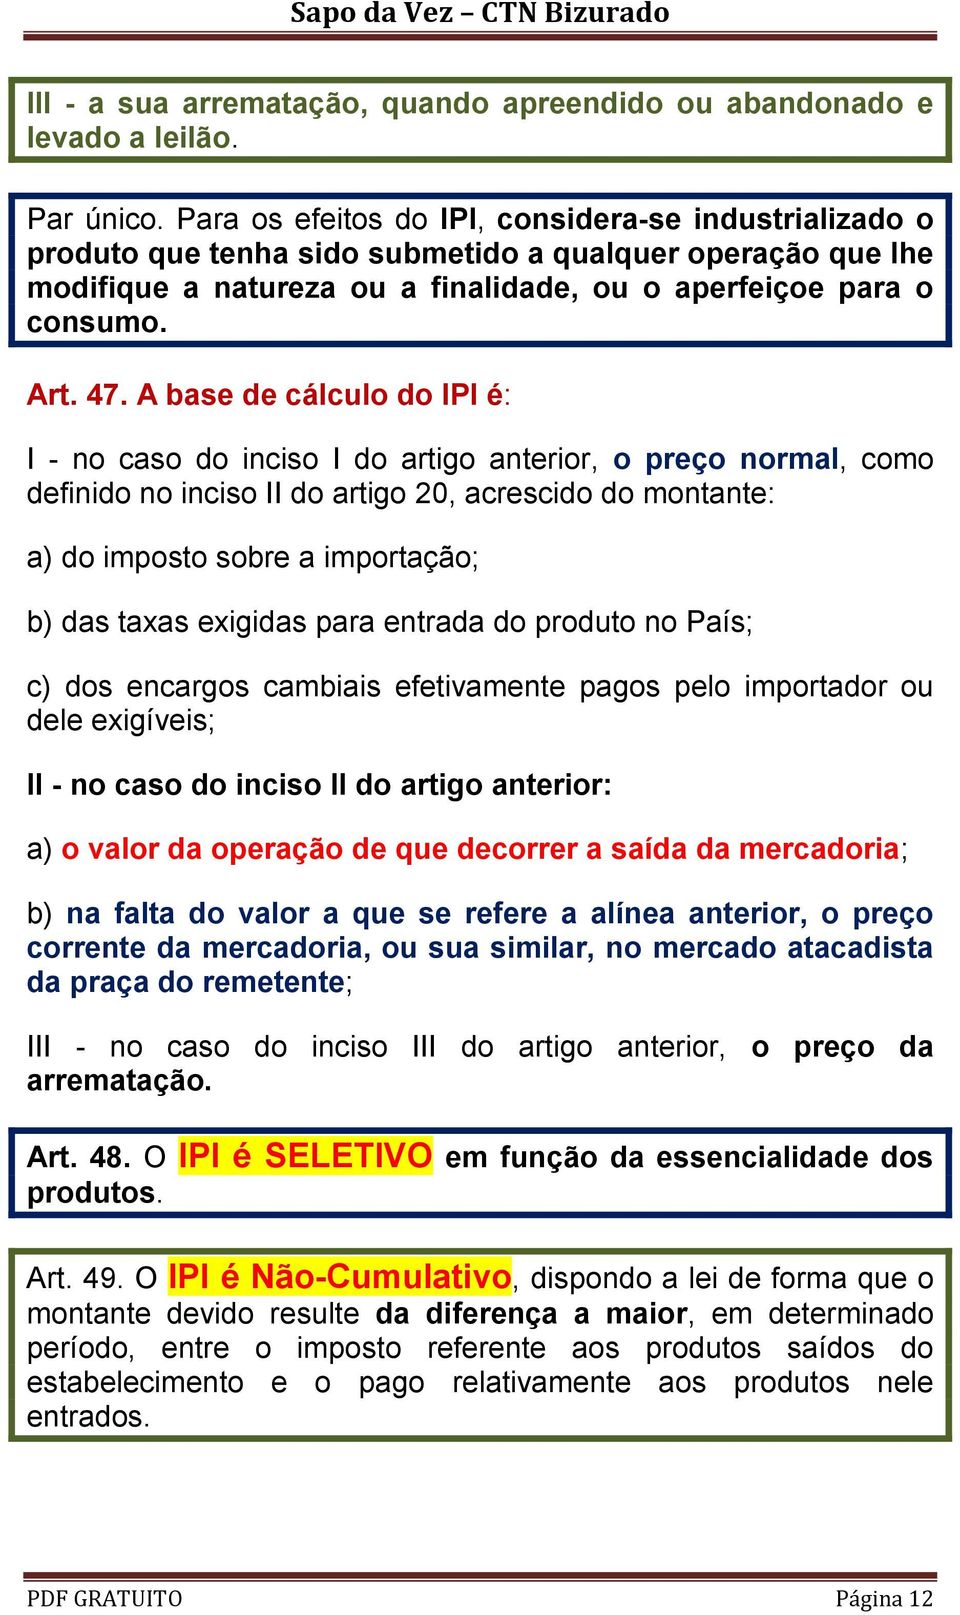 A base de cálculo do IPI é: I - no caso do inciso I do artigo anterior, o preço normal, como definido no inciso II do artigo 20, acrescido do montante: a) do imposto sobre a importação; b) das taxas